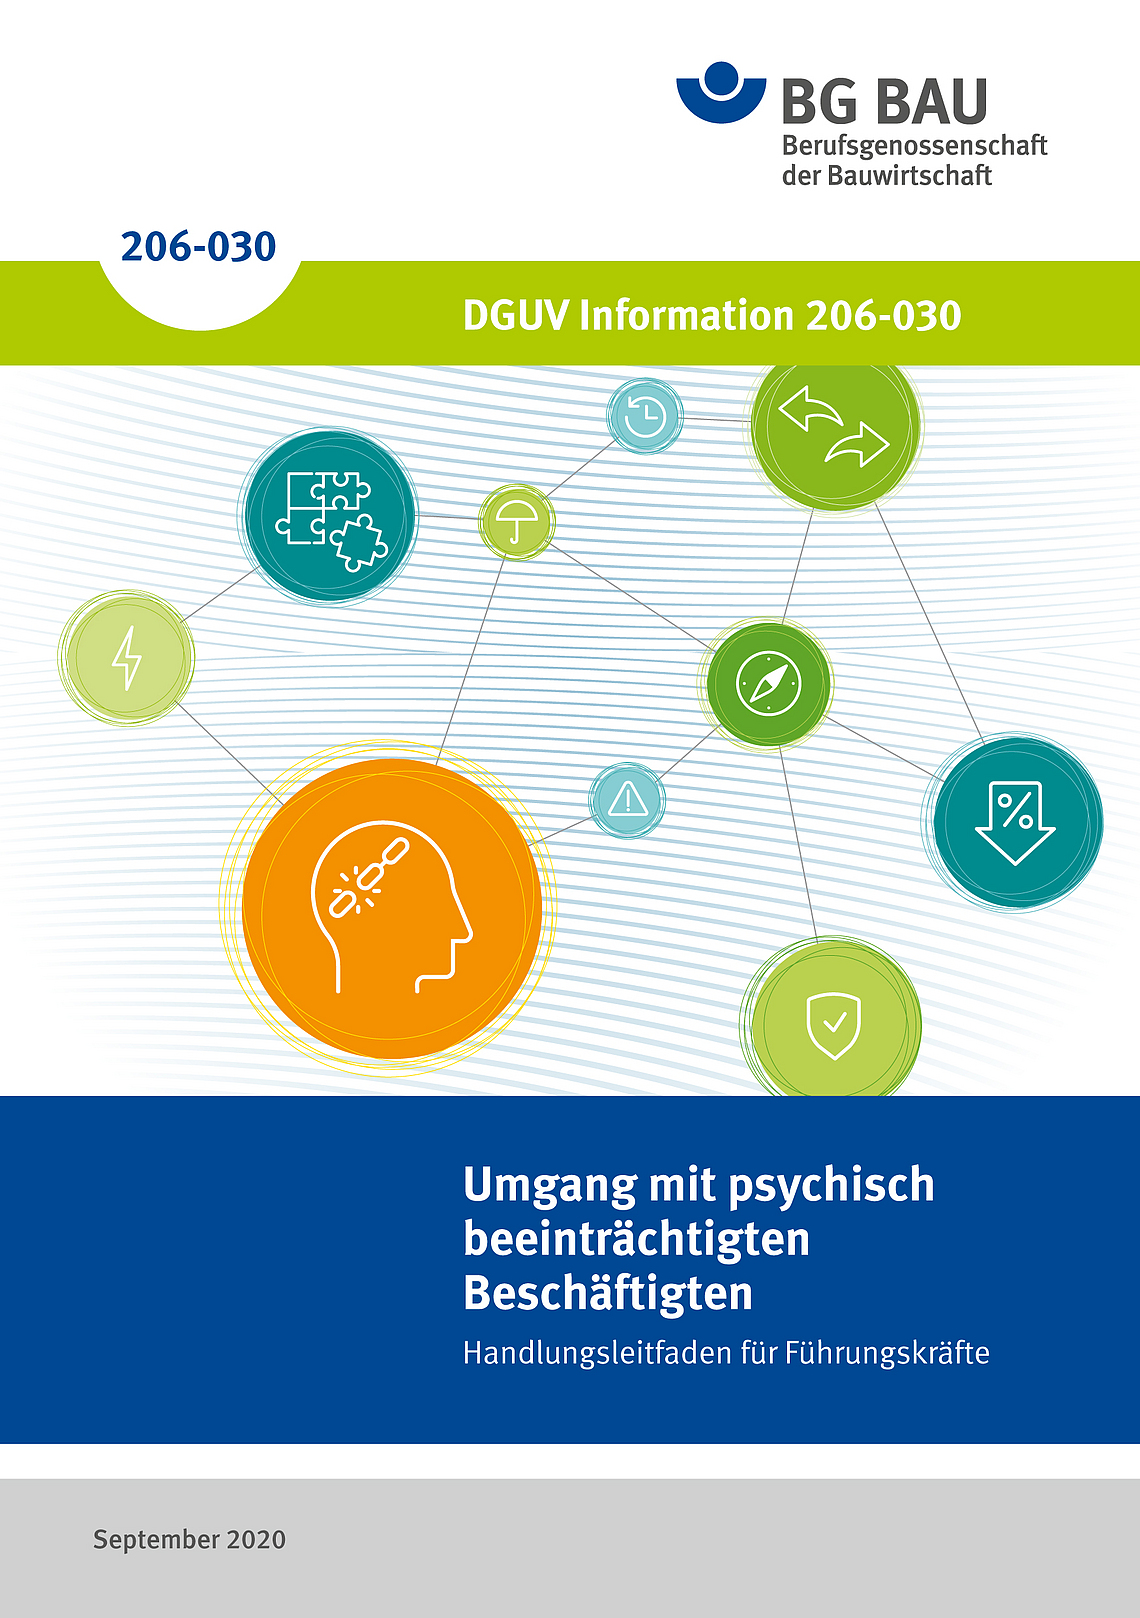 Titelbild der DGUV Information 206-030: Umgang mit psychisch beeinträchtigten Beschäftigten - Handlungsleitfaden für Führungskräfte.
